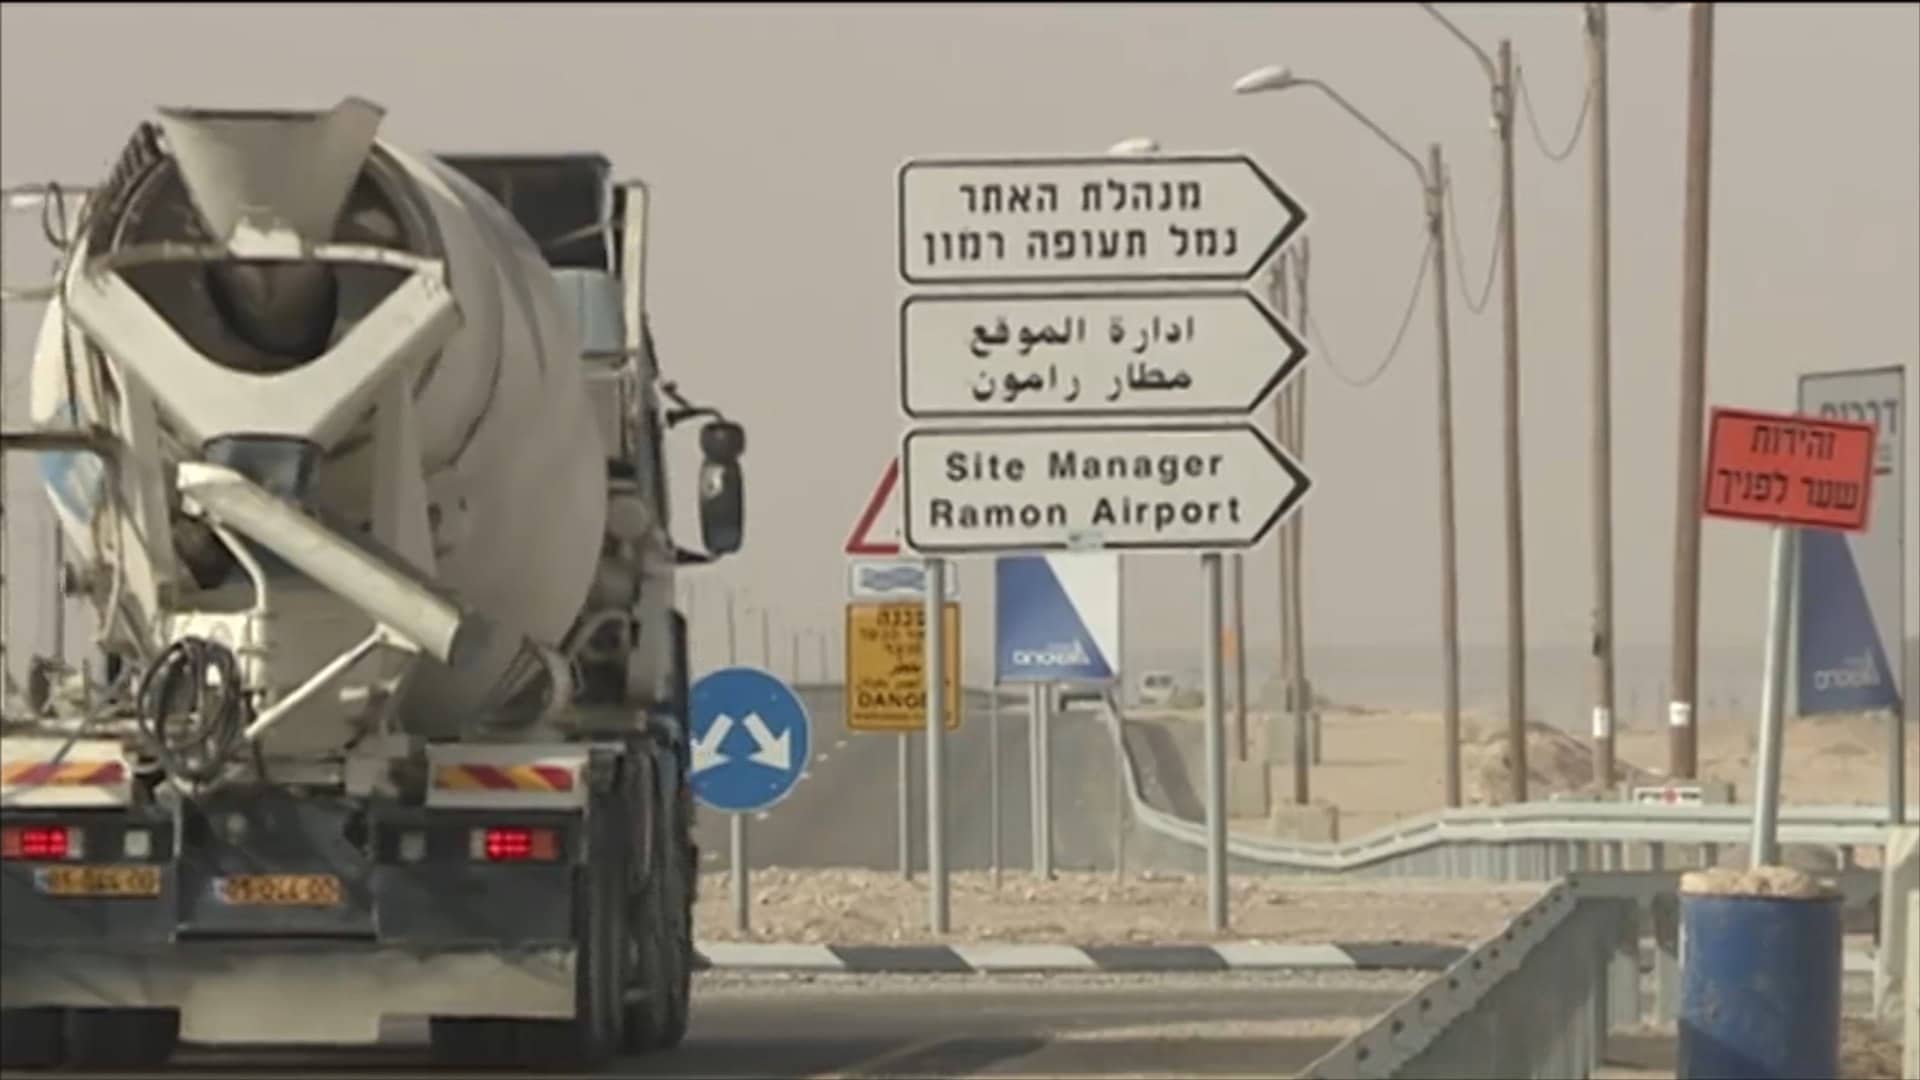 كتائب القسام تقصف مطار رامون بصاروخ عياش 250 watanserb.com